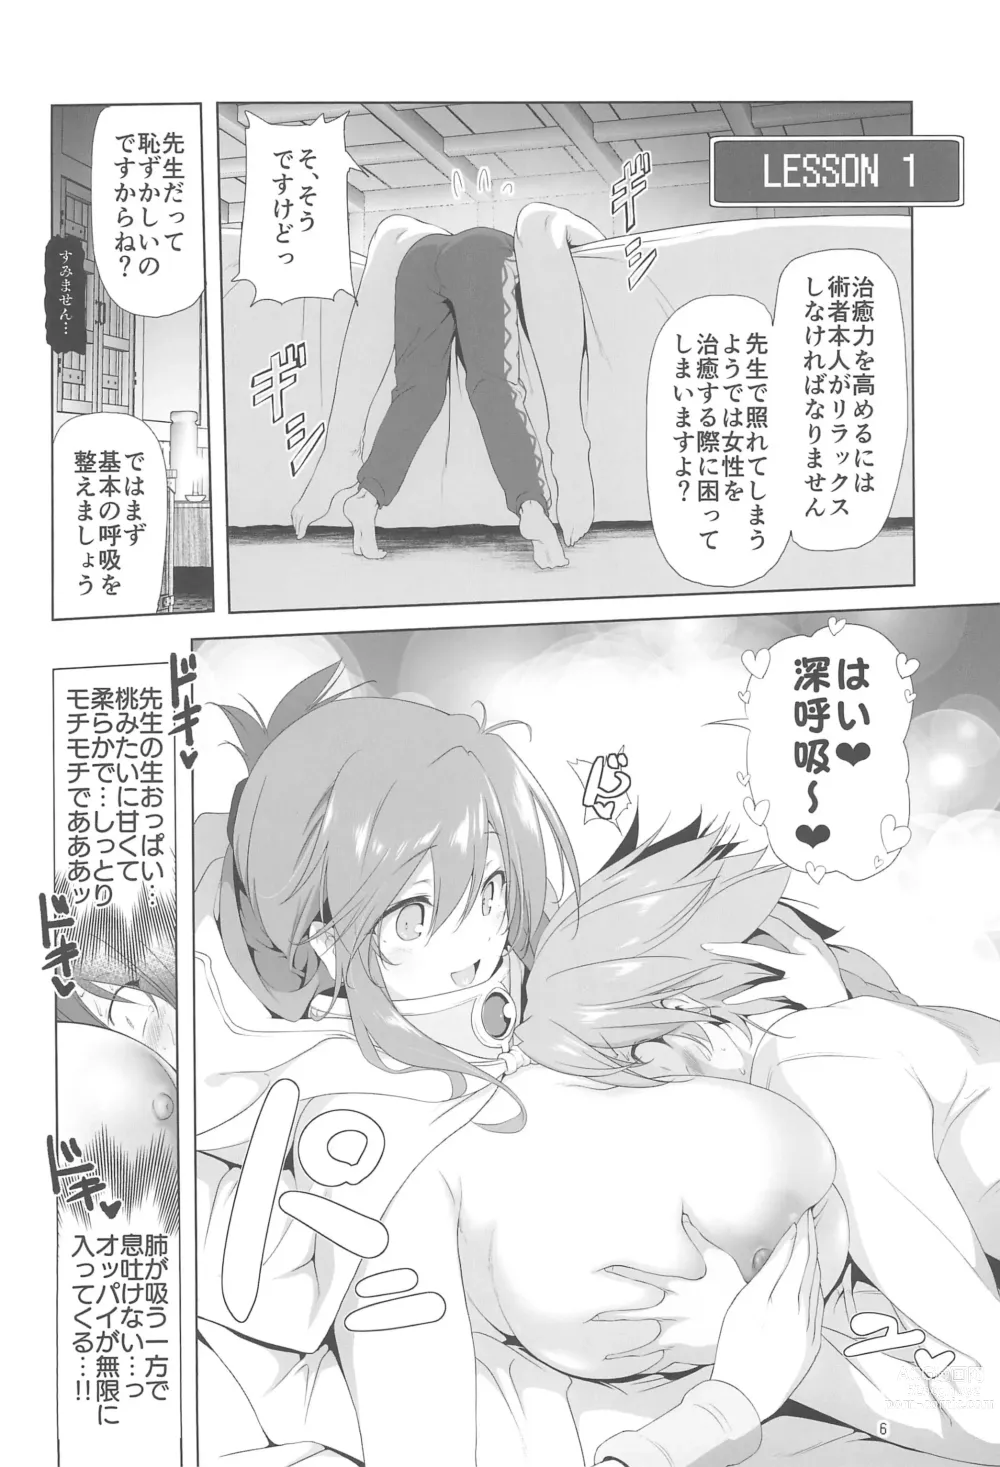 Page 6 of doujinshi Makotoni Zannen desu ga Bouken no Sho 9 wa Kiete Shimaimashita.